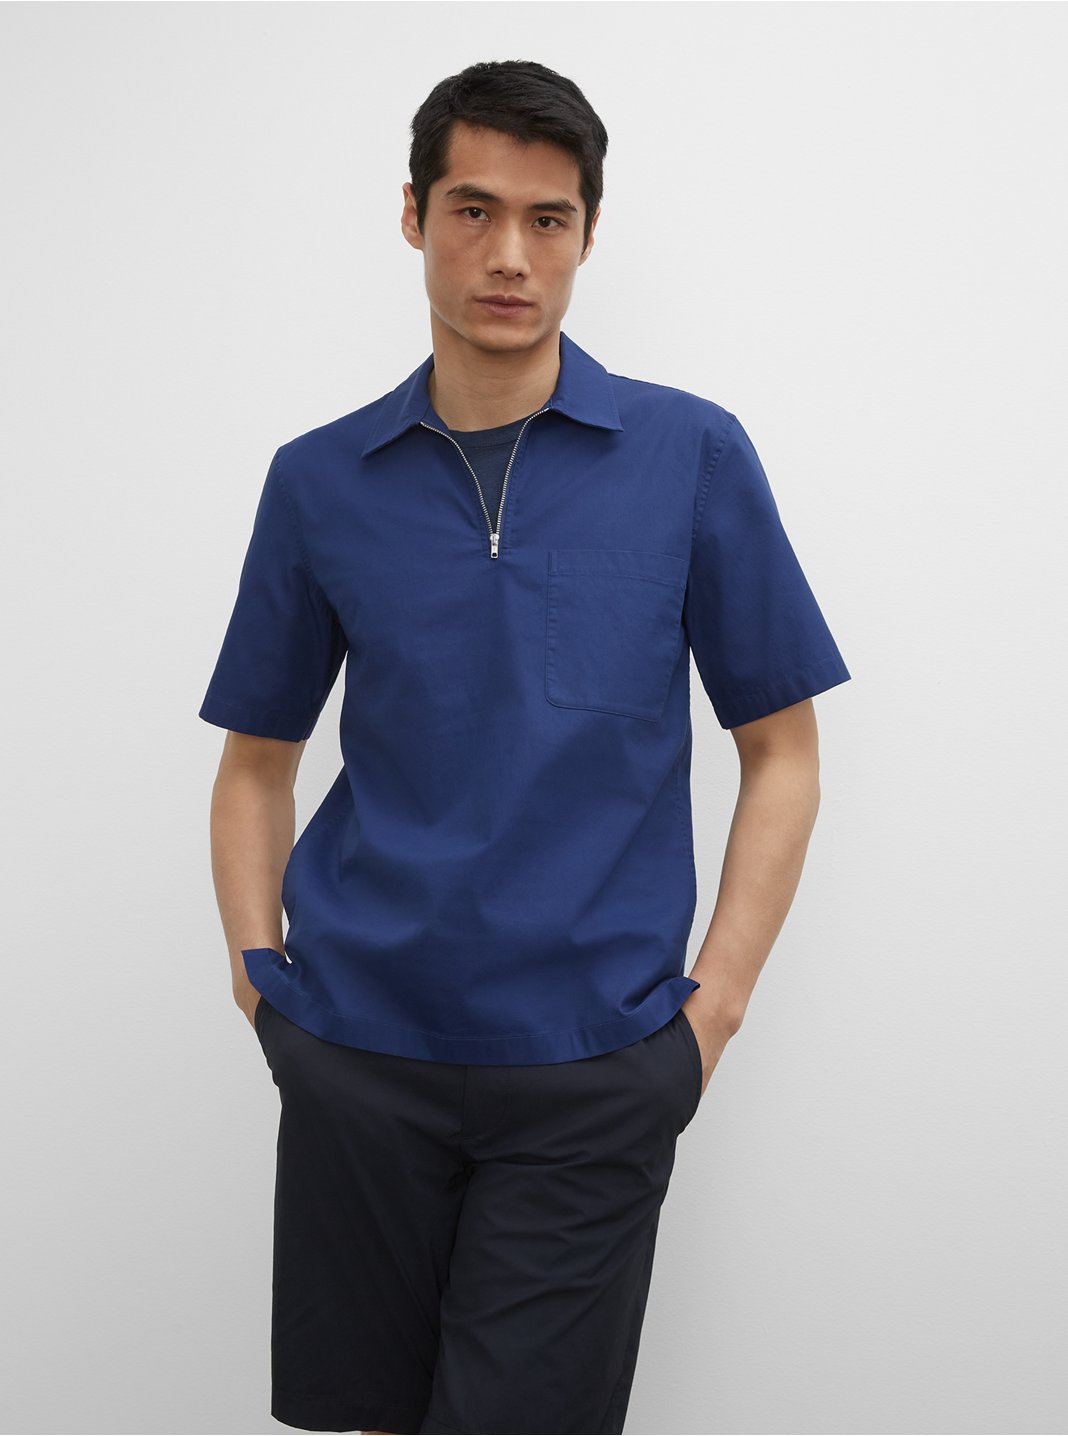 클럽 모나코 셔츠 Club Monaco Short Sleeve Zip Popover Shirt,Deep Ultramarine